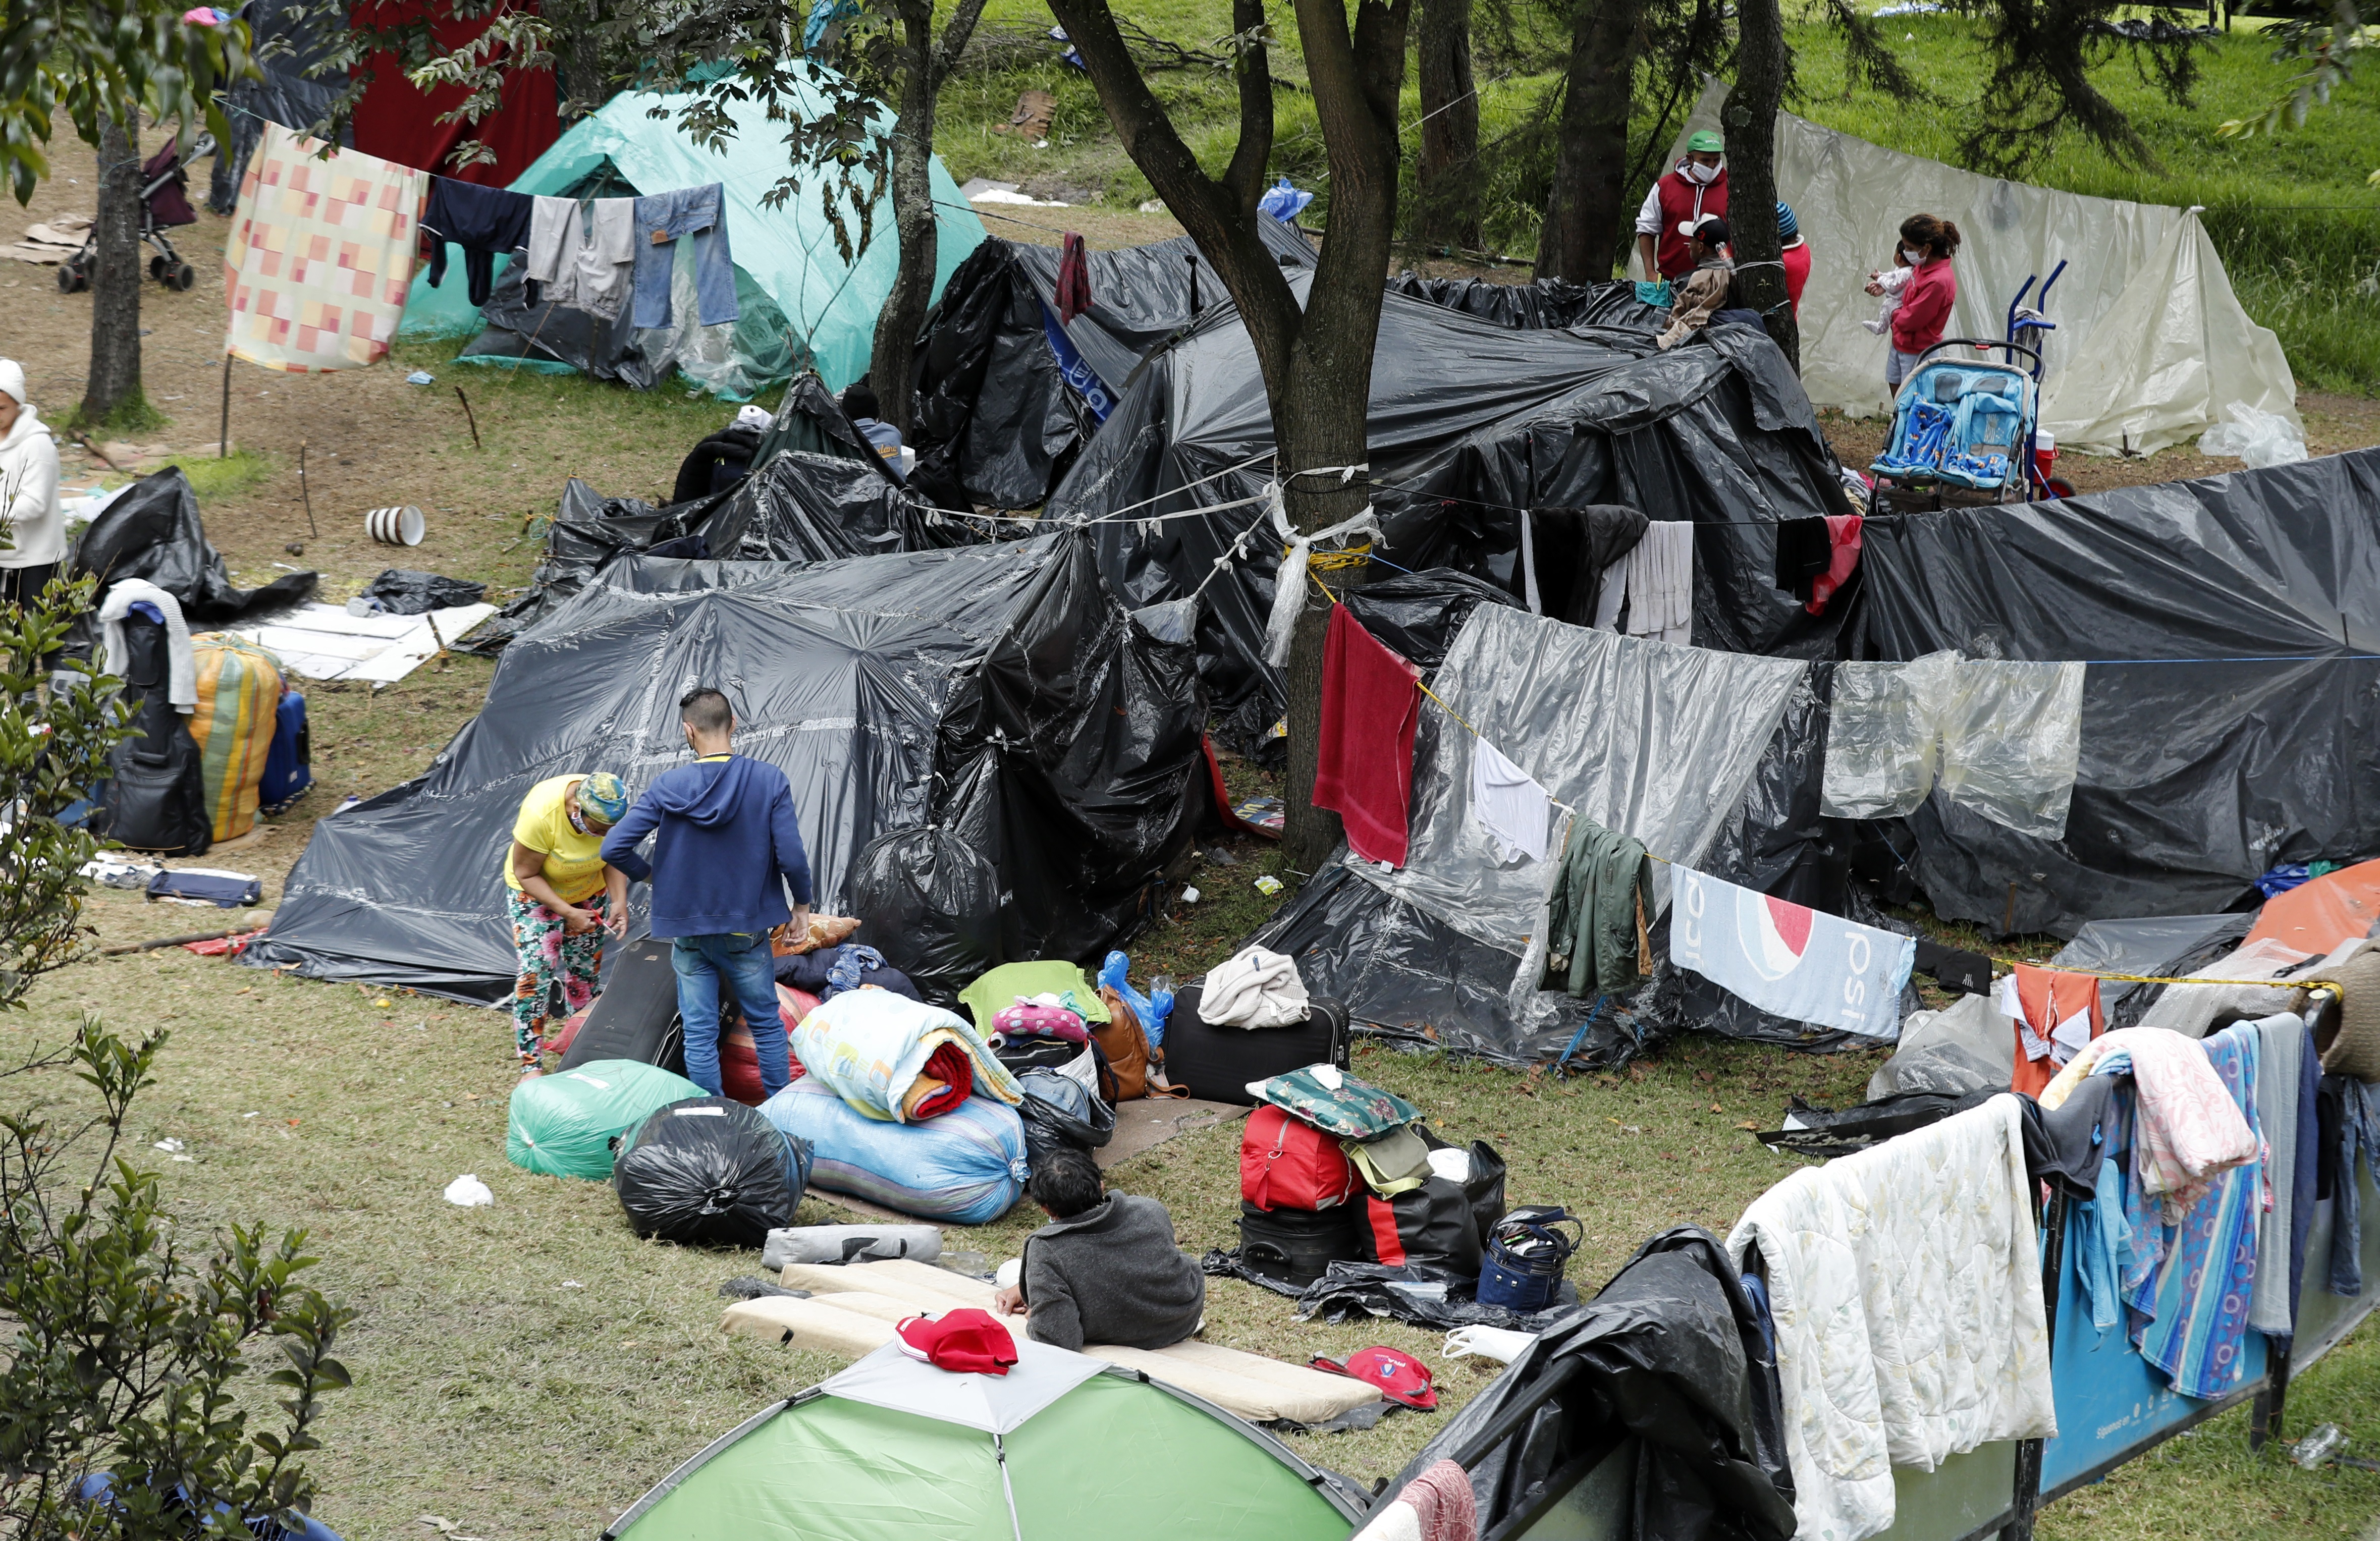 Unos 400 connacionales varados en Bogotá levantarán su campamento y viajarán a Venezuela (Fotos)